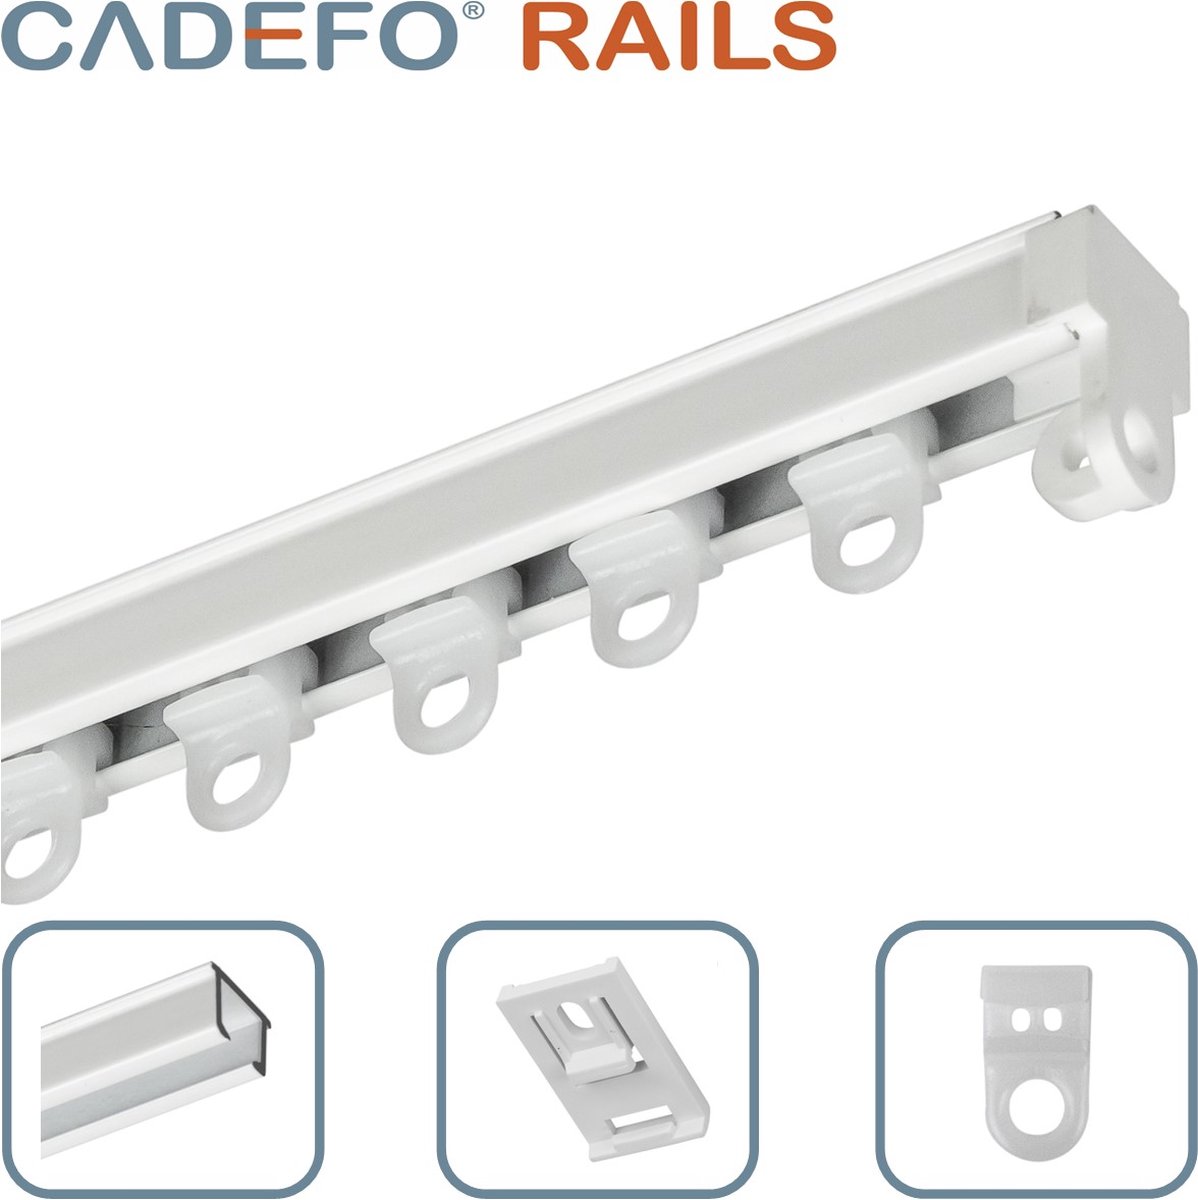 CADEFO RAILS (201 - 250 cm) Gordijnrails - Compleet op maat! - UIT 1 STUK - Leverbaar tot 6 meter - Plafondbevestiging - Lengte 225 cm